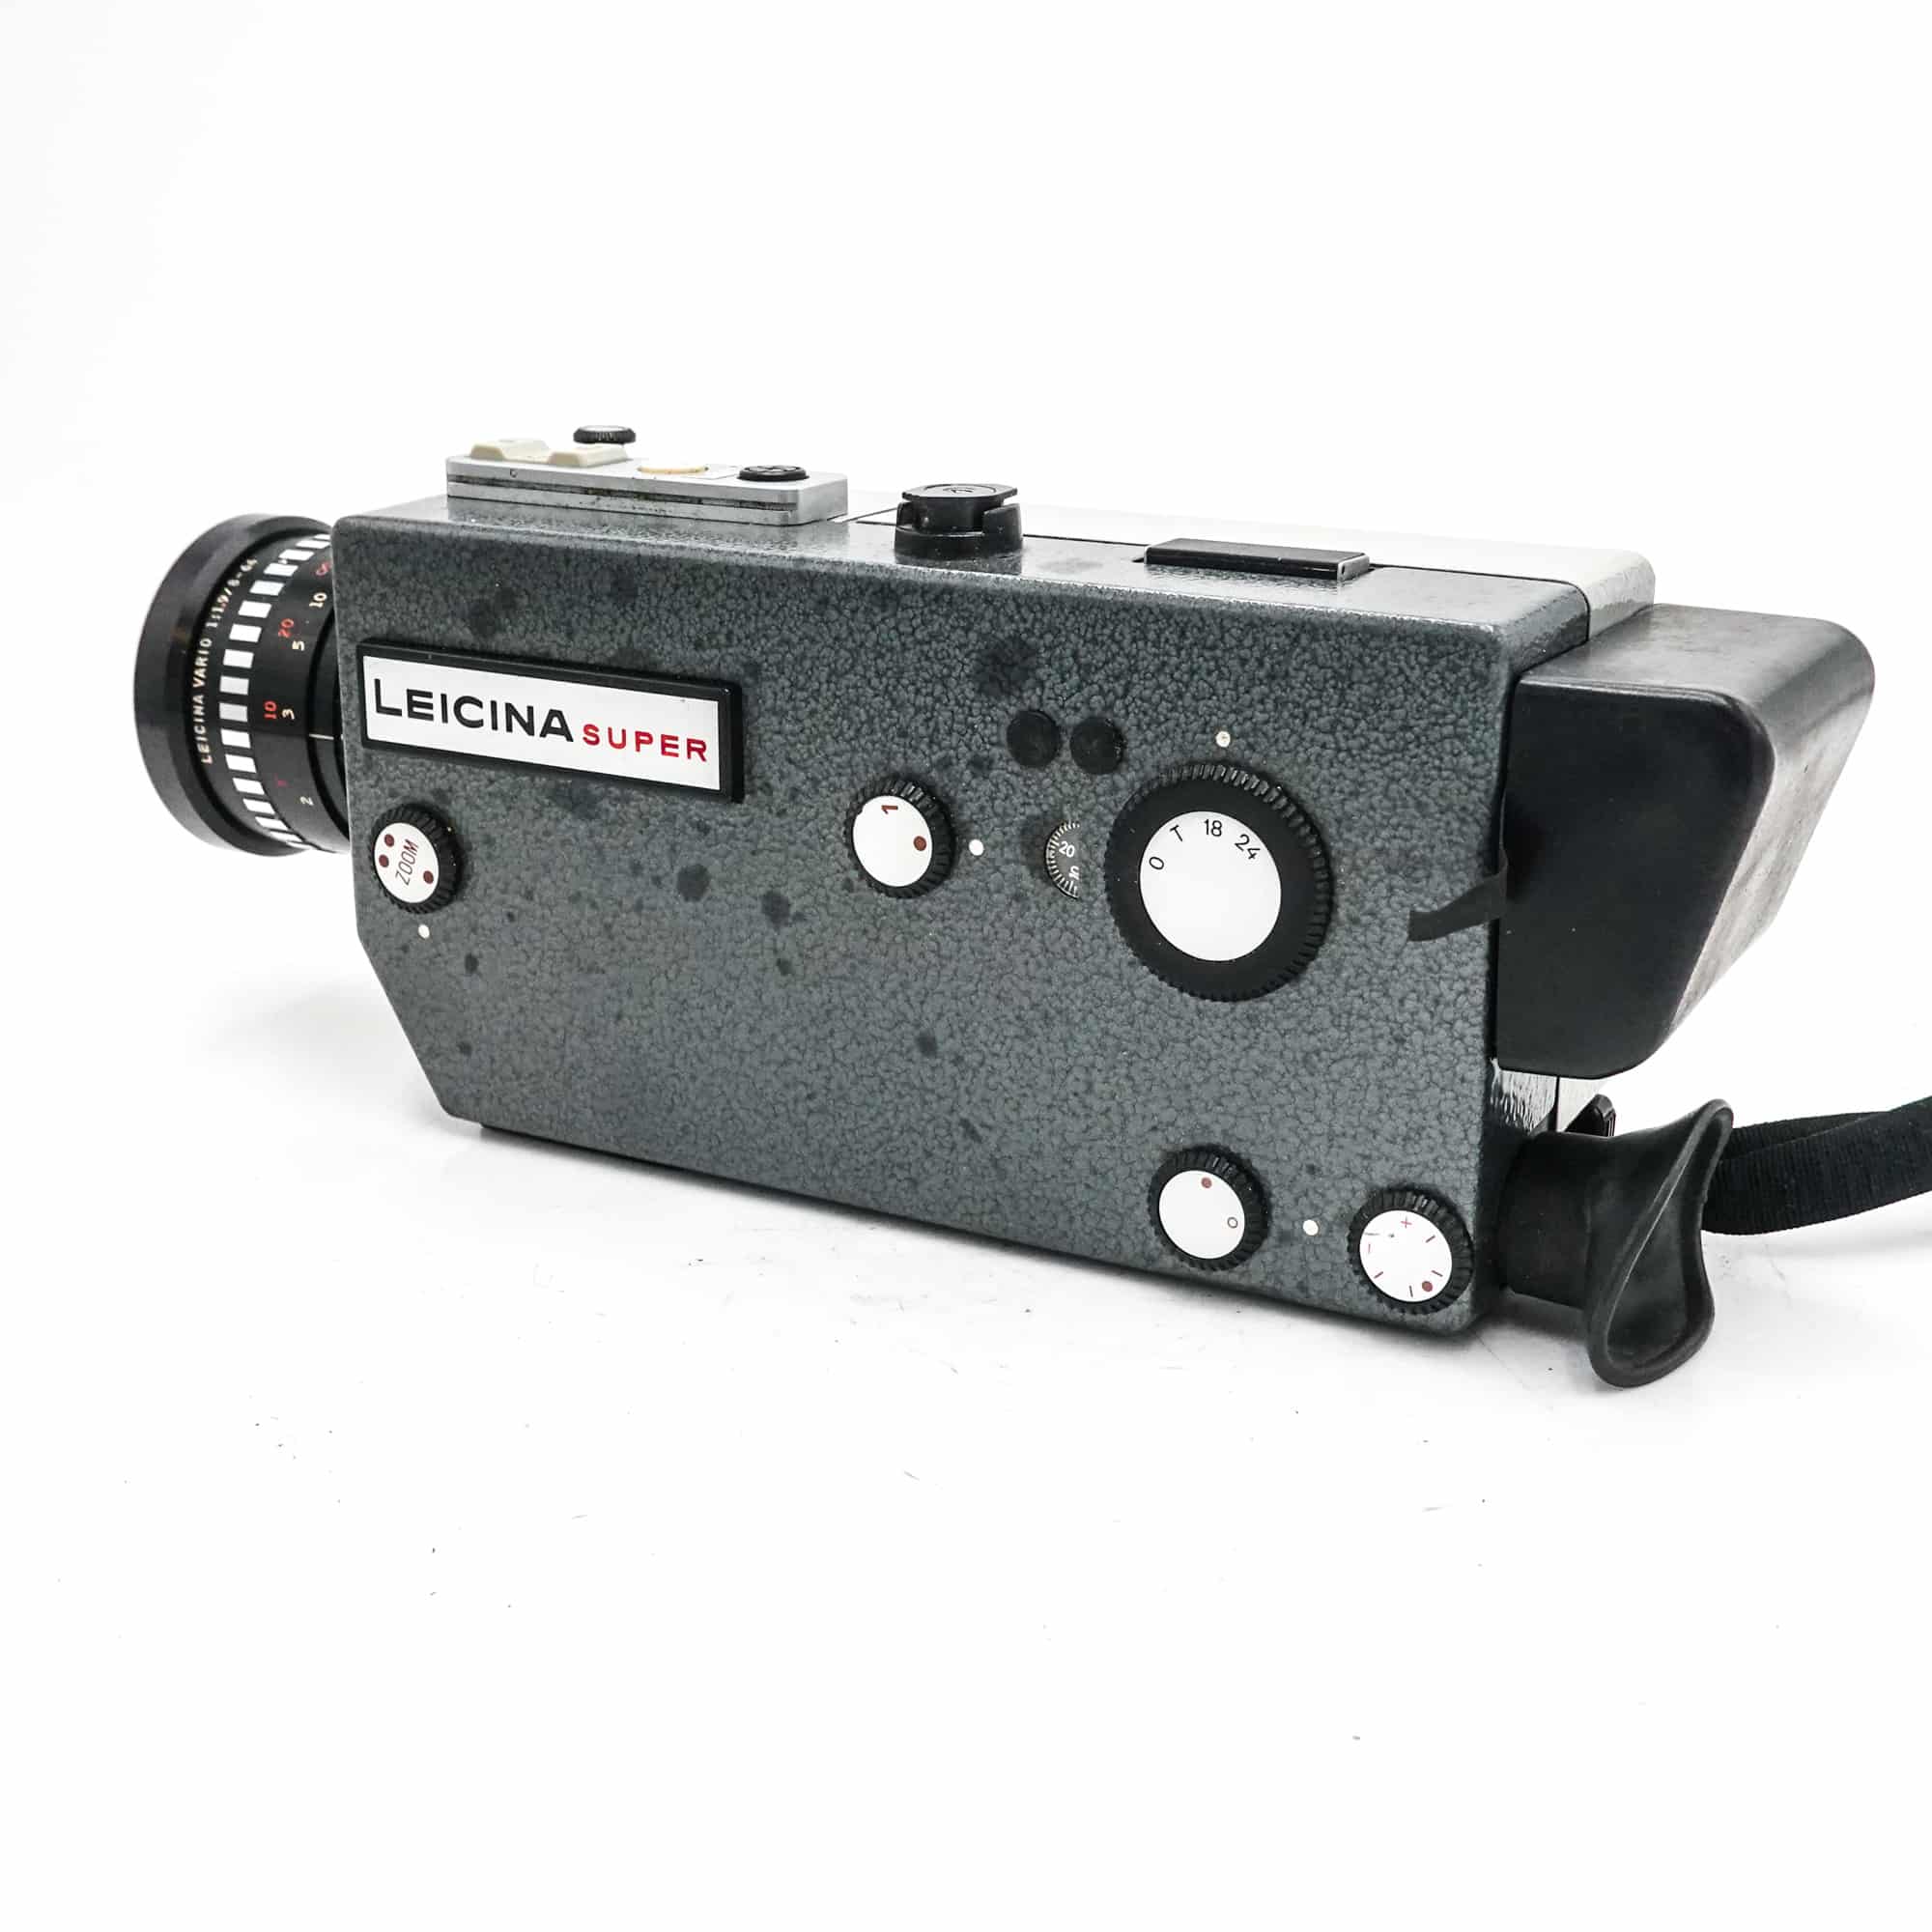 Leicina Super 8 Camera